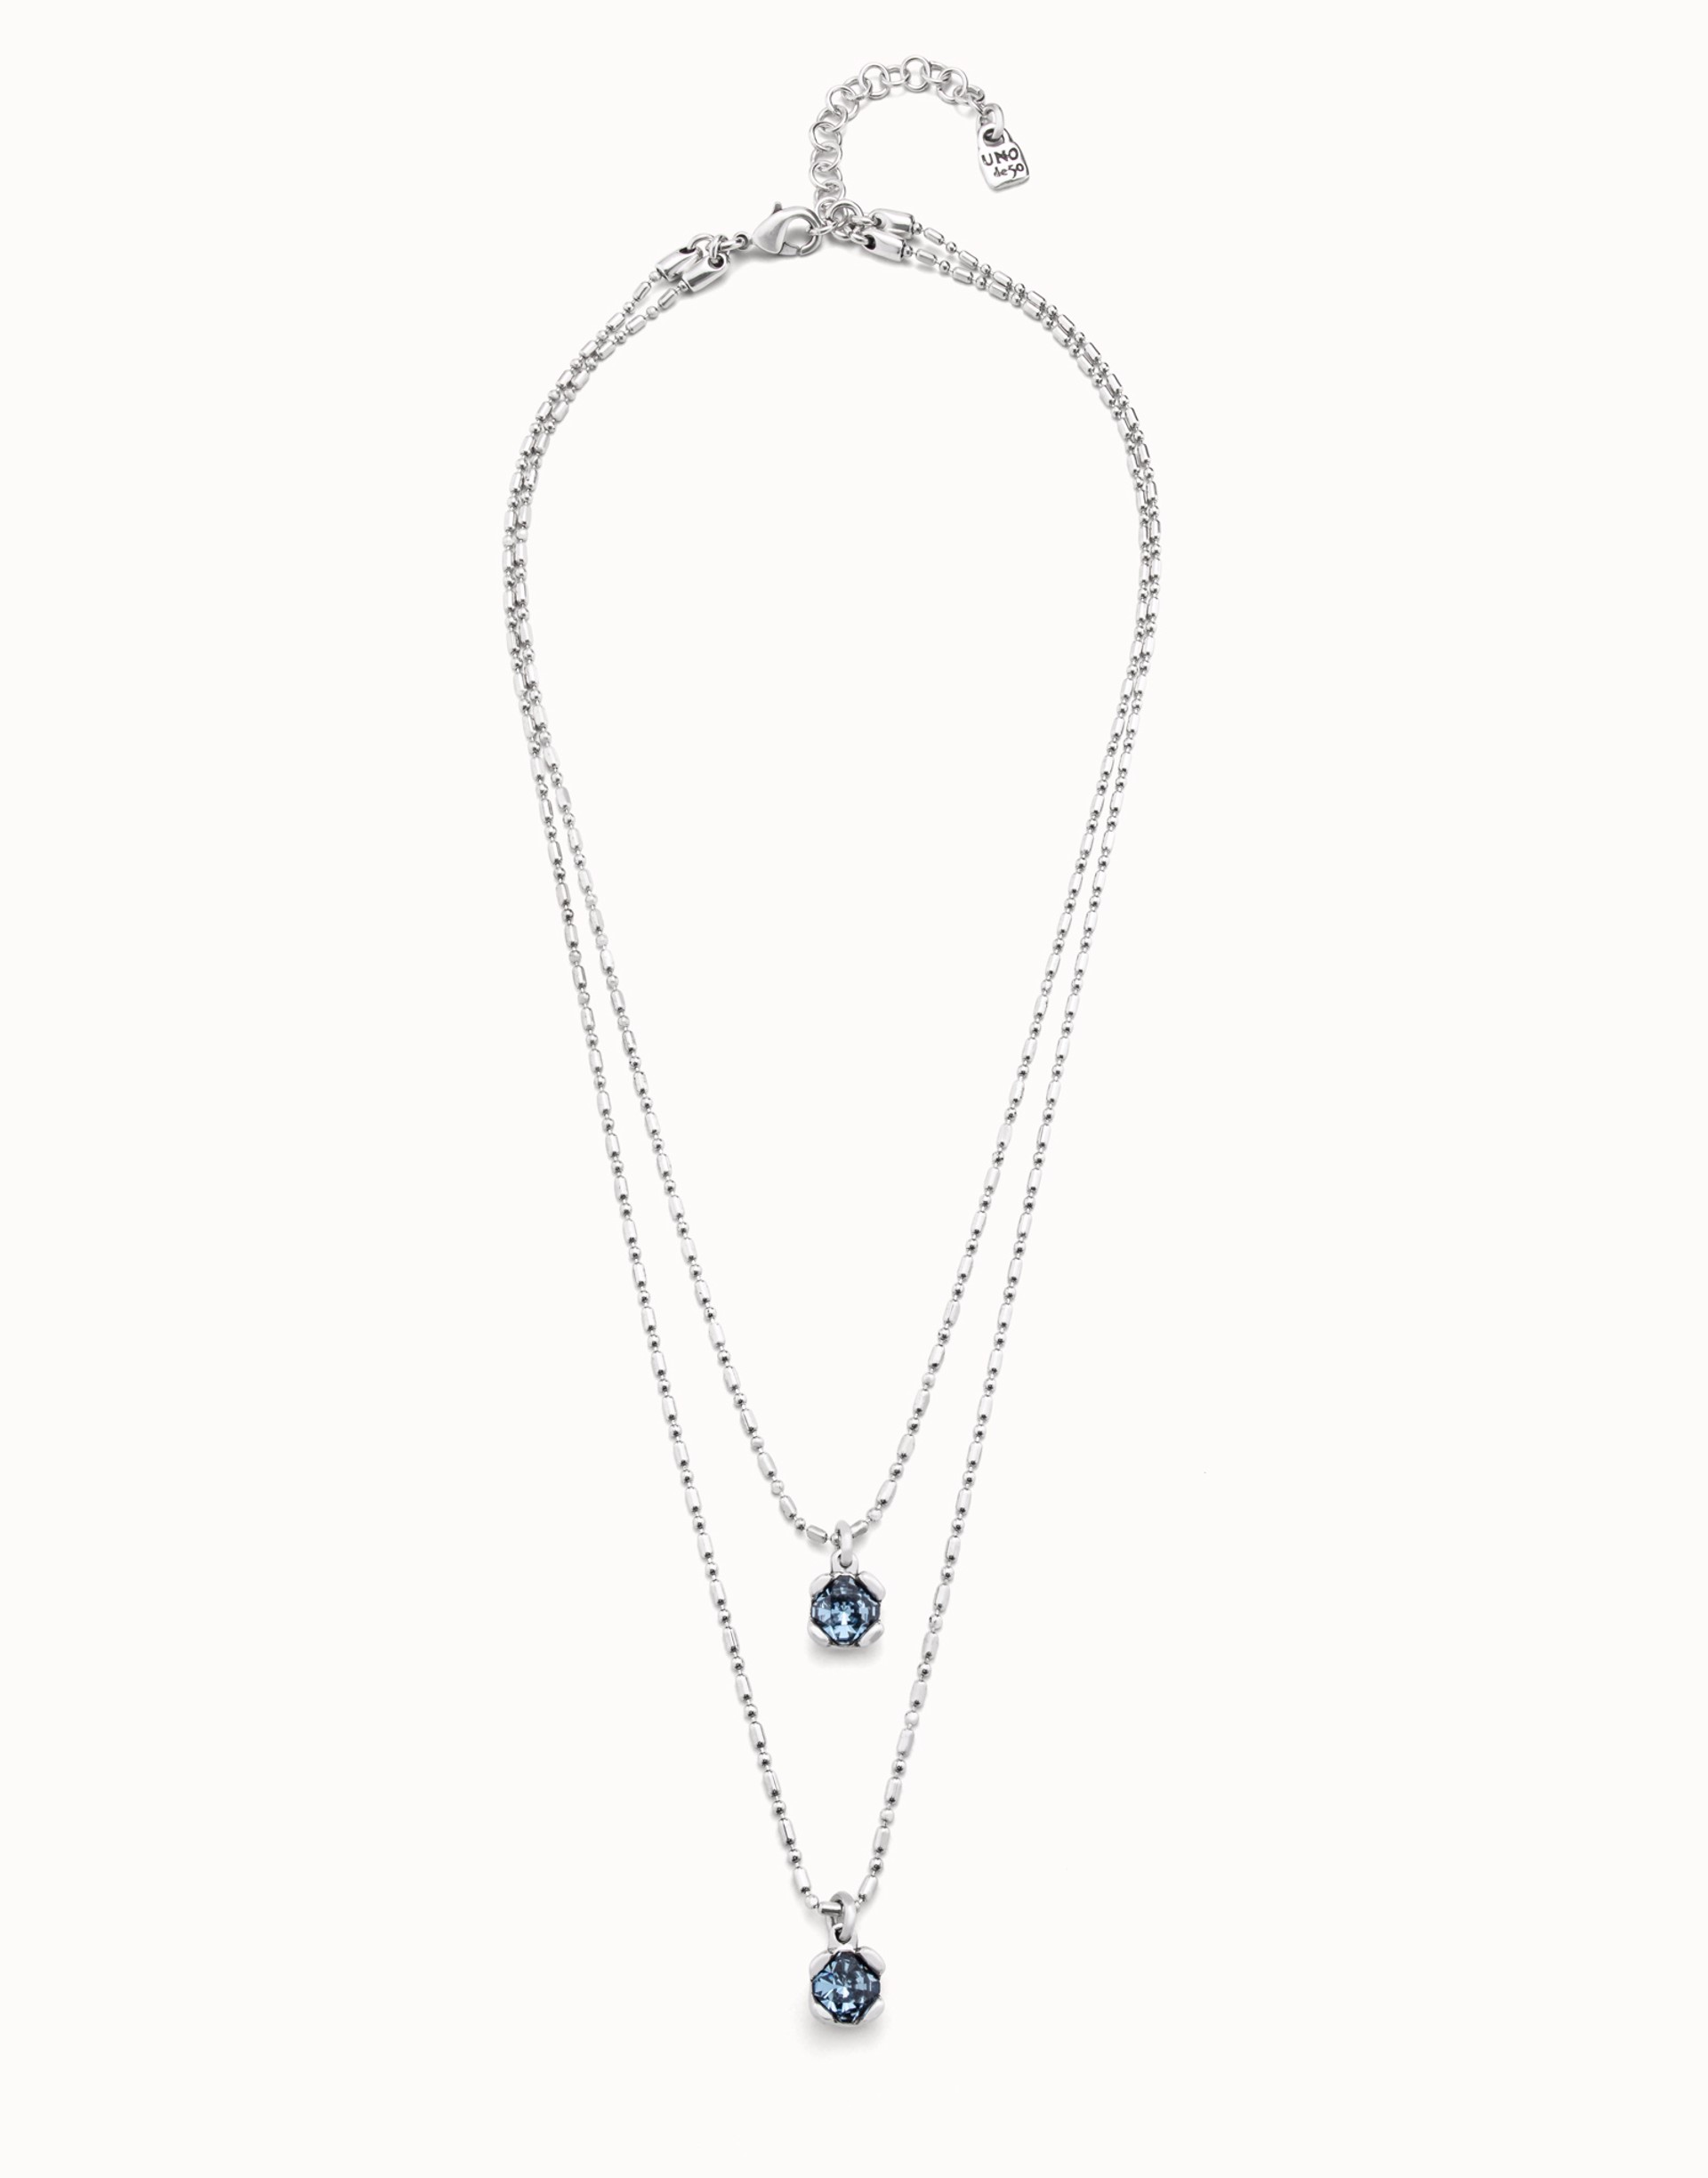 Aura Blue Necklace by UNO DE 50